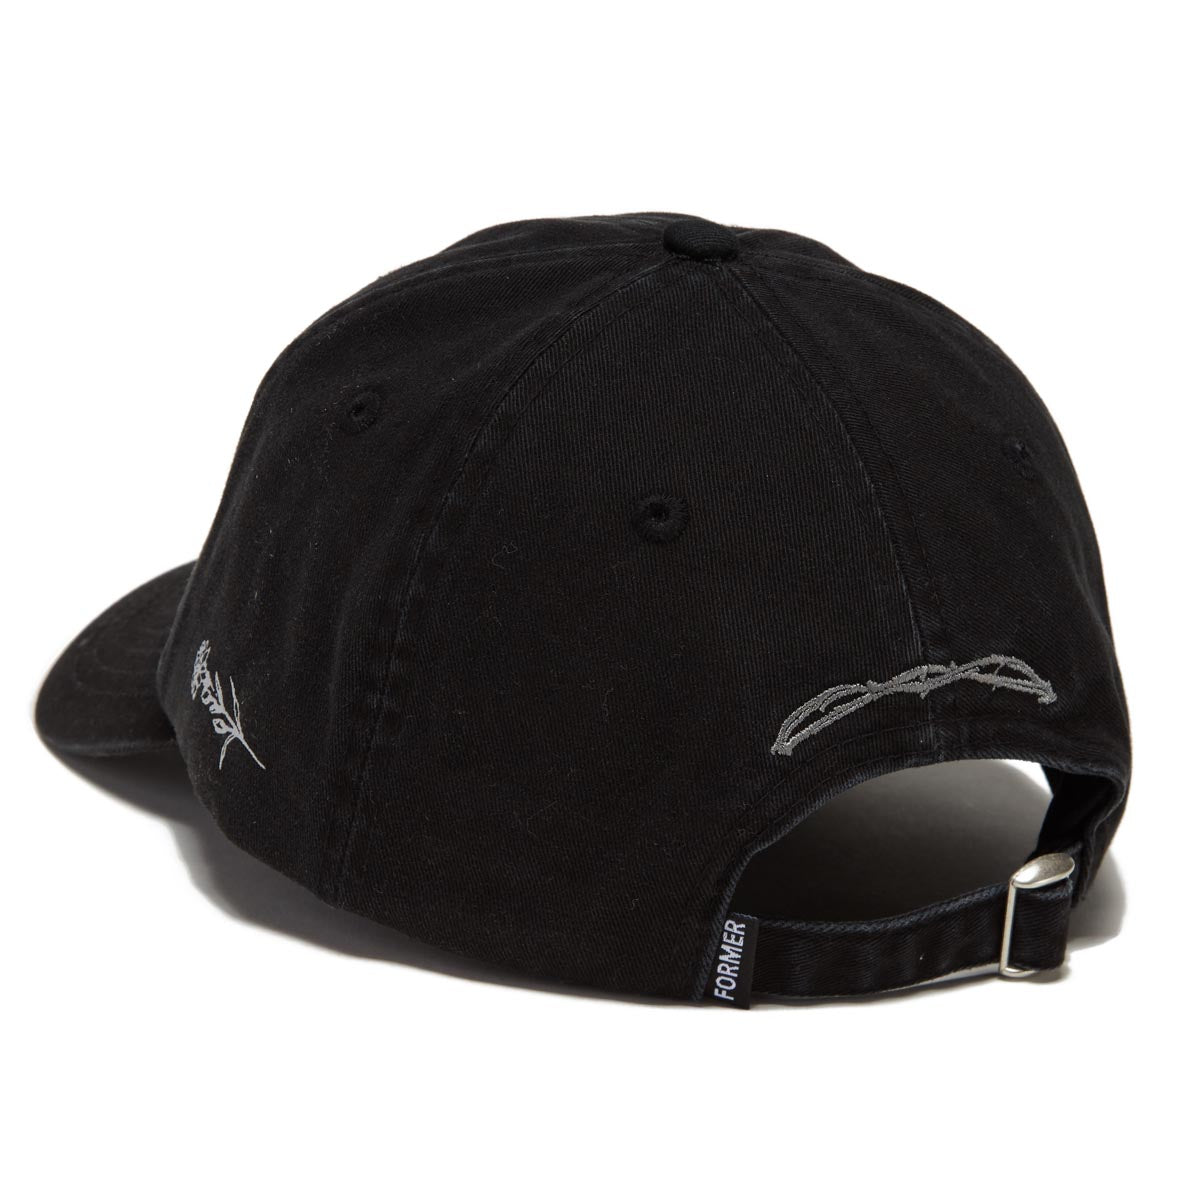 Former Shifting Hat - Black image 2